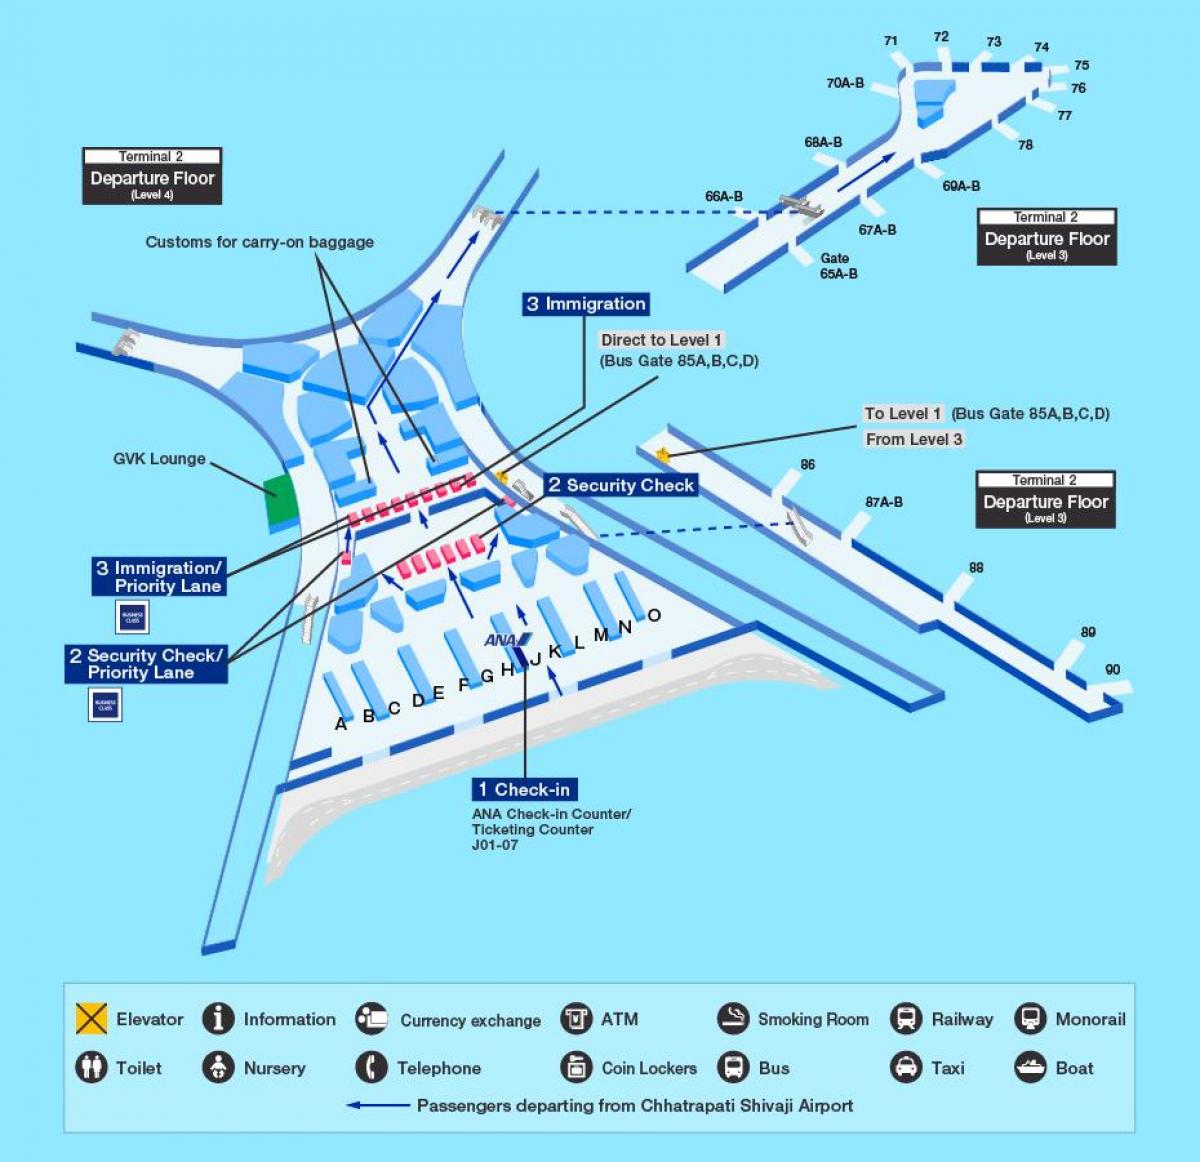 Chhatrapati Shivaji საერთაშორისო აეროპორტის რუკა